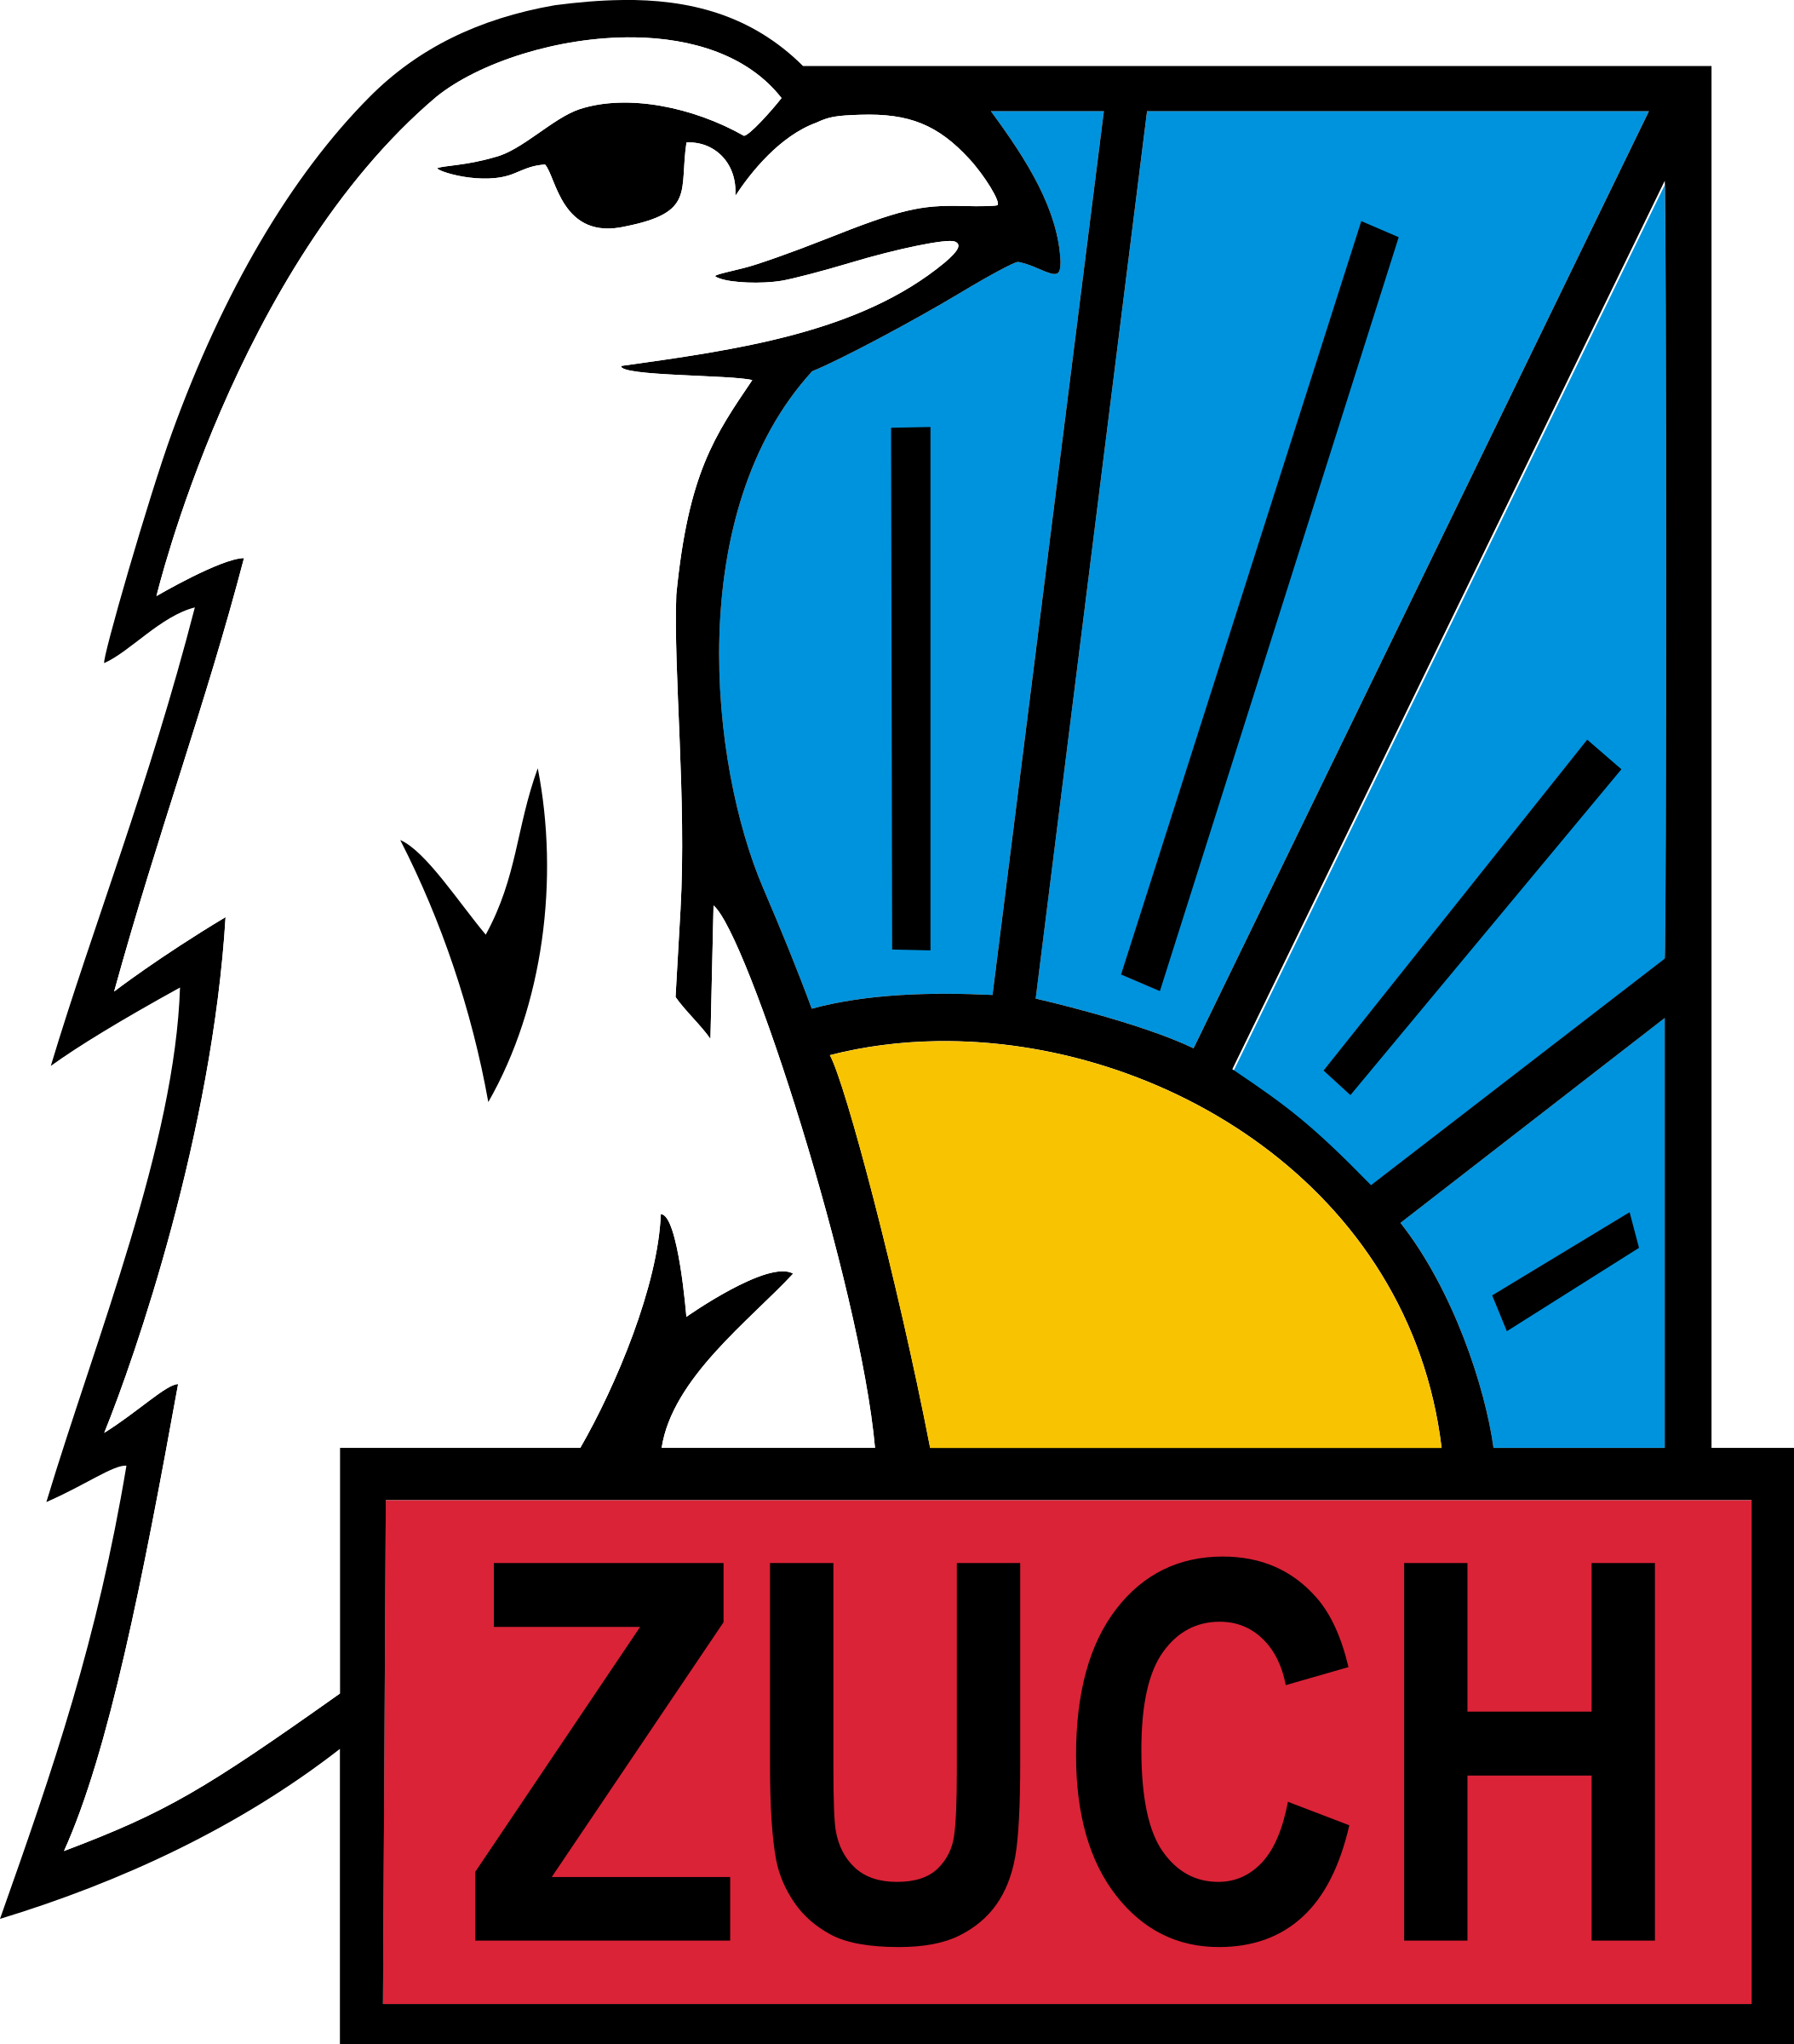 Free Znaczek Zucha - Zuch Znaczek (2107x2400)